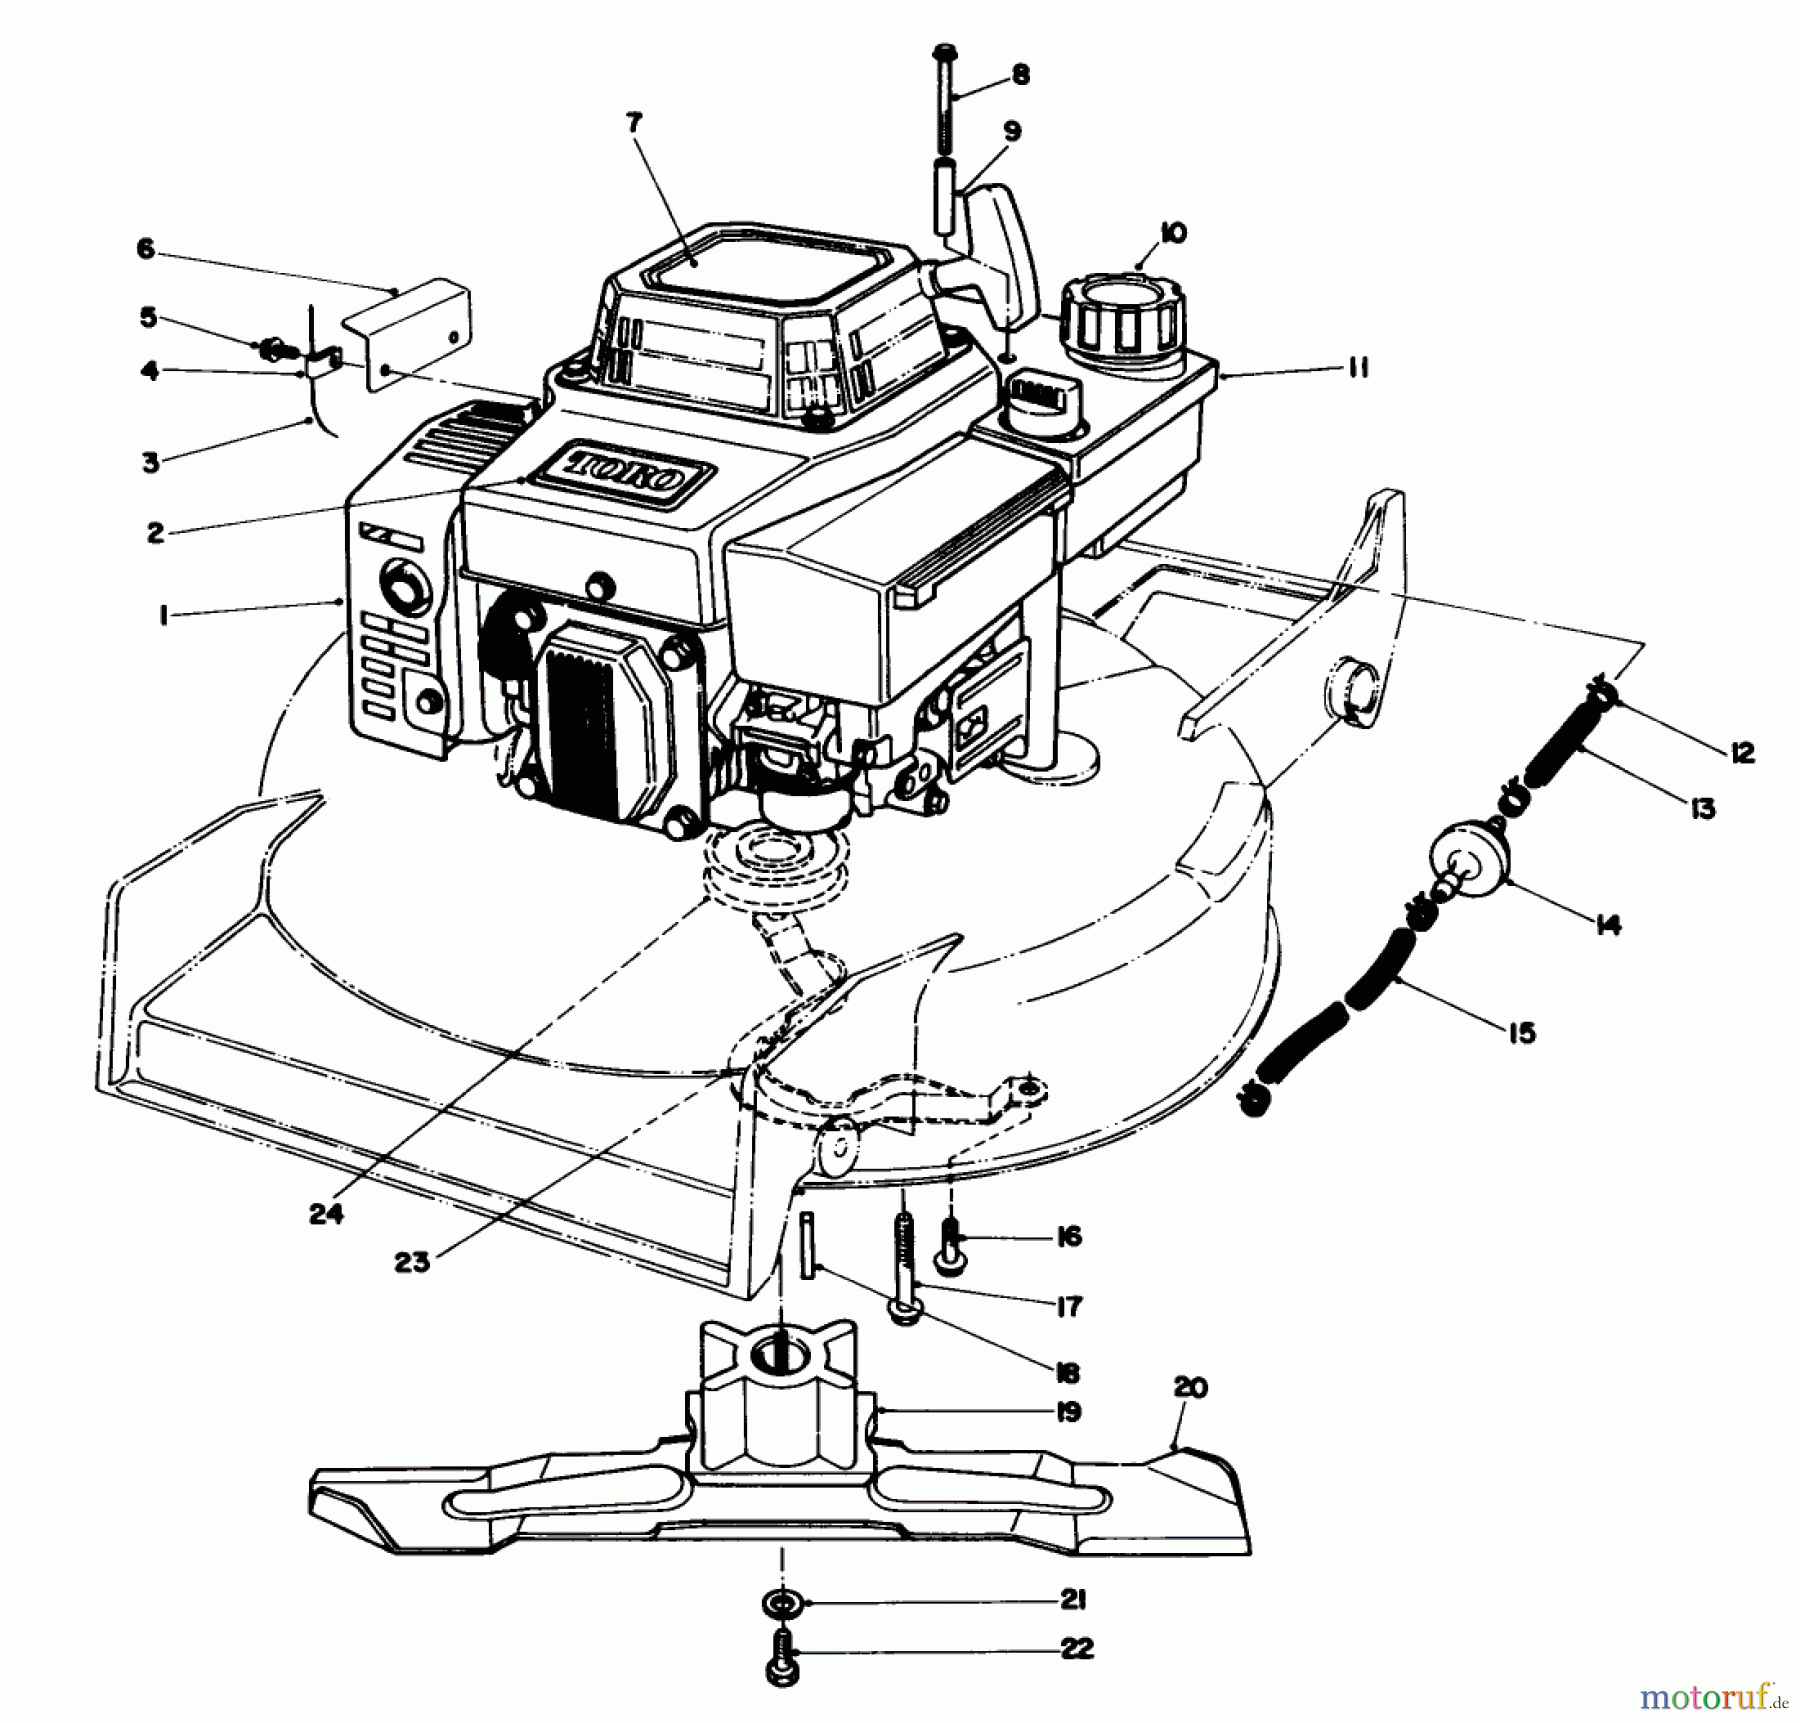  Toro Neu Mowers, Walk-Behind Seite 1 20627C - Toro Lawnmower, 1987 (7000001-7999999) ENGINE ASSEMBLY #1